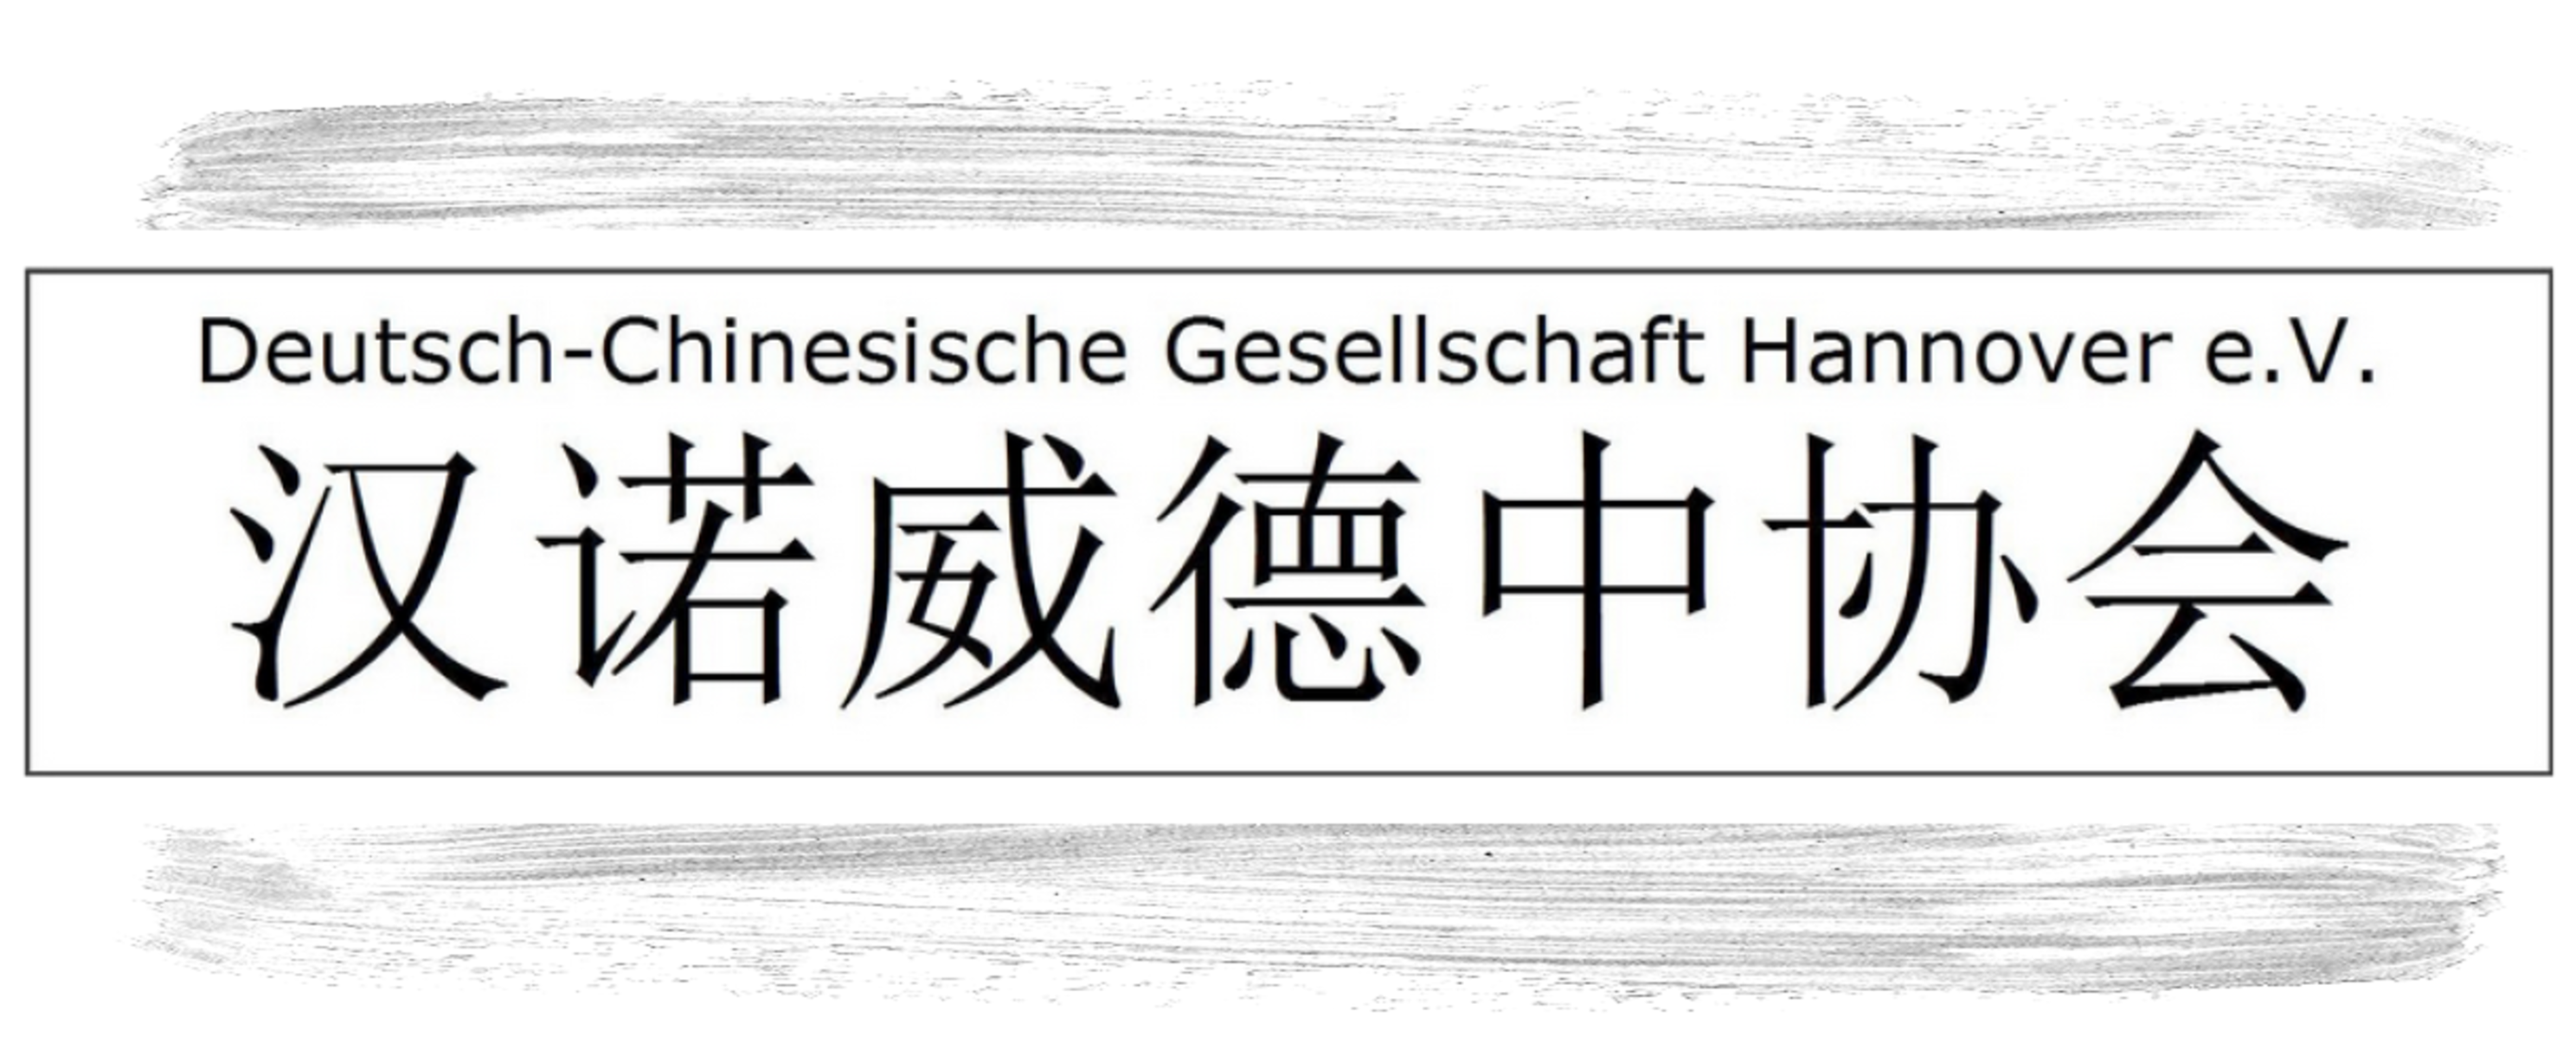 Deutsch-Chinesische Gesellschaft Hannover e.V.